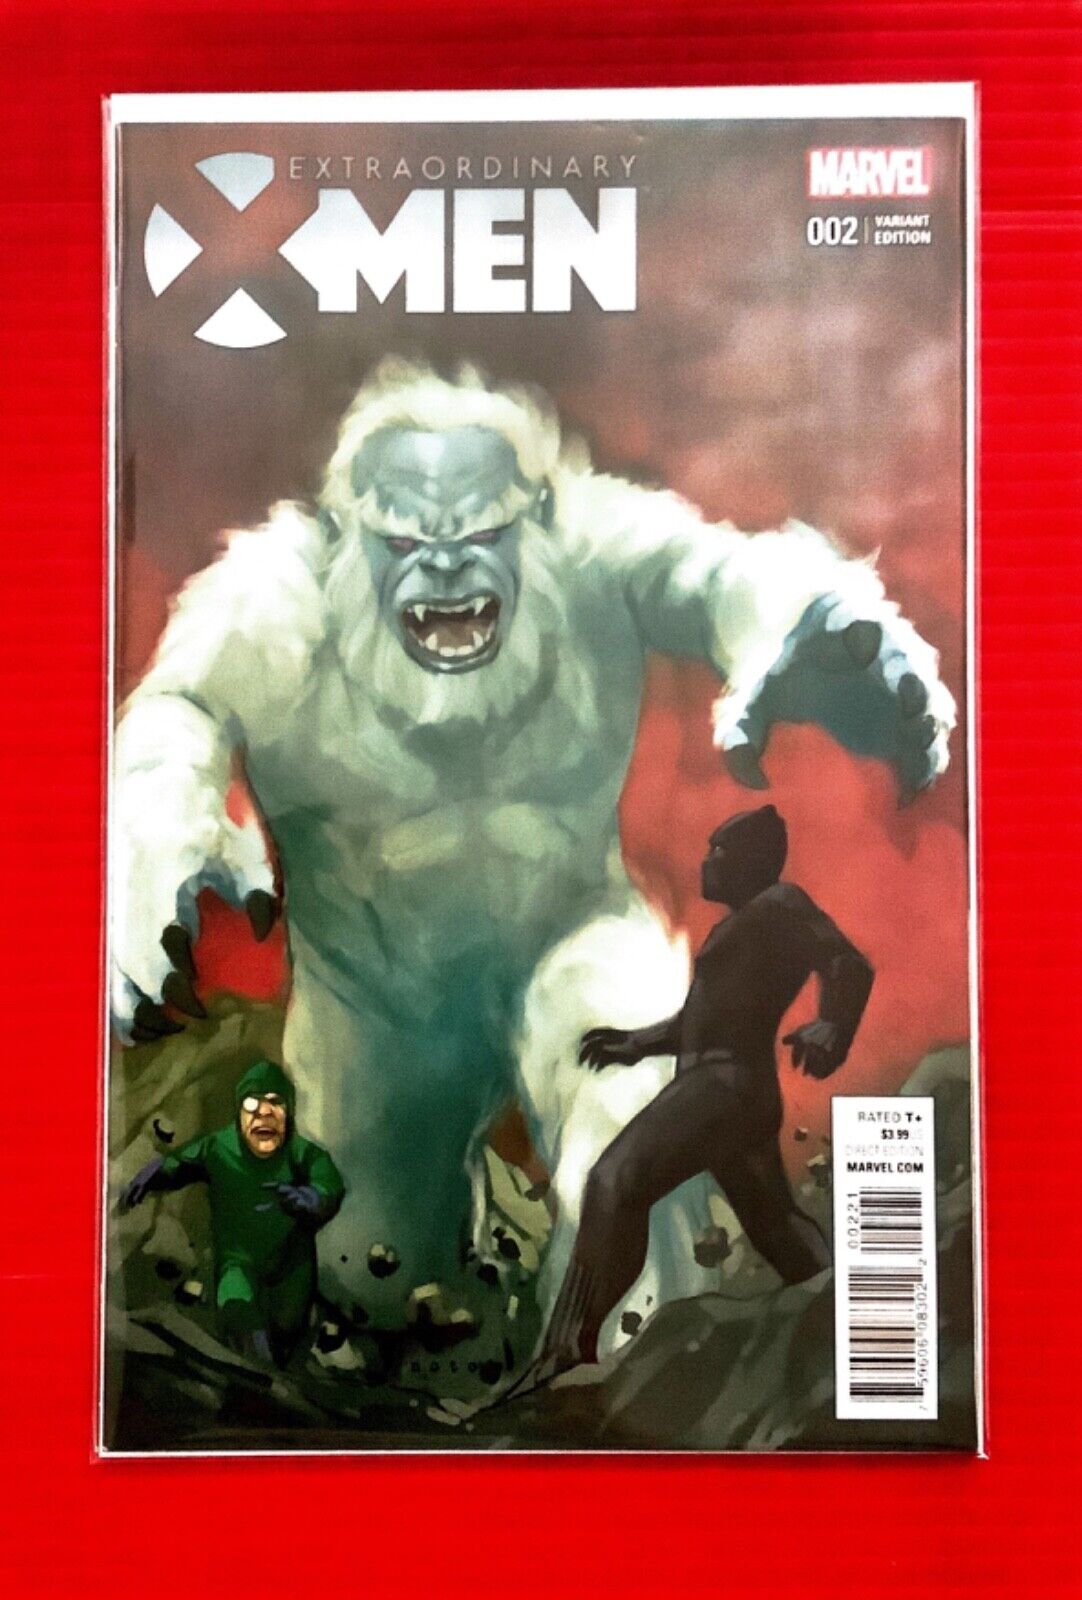 EXTRAORDINARY X-MEN #2 VARIANT COVER NEAR MINT BUY TODAY AT RAINBOW COMICS